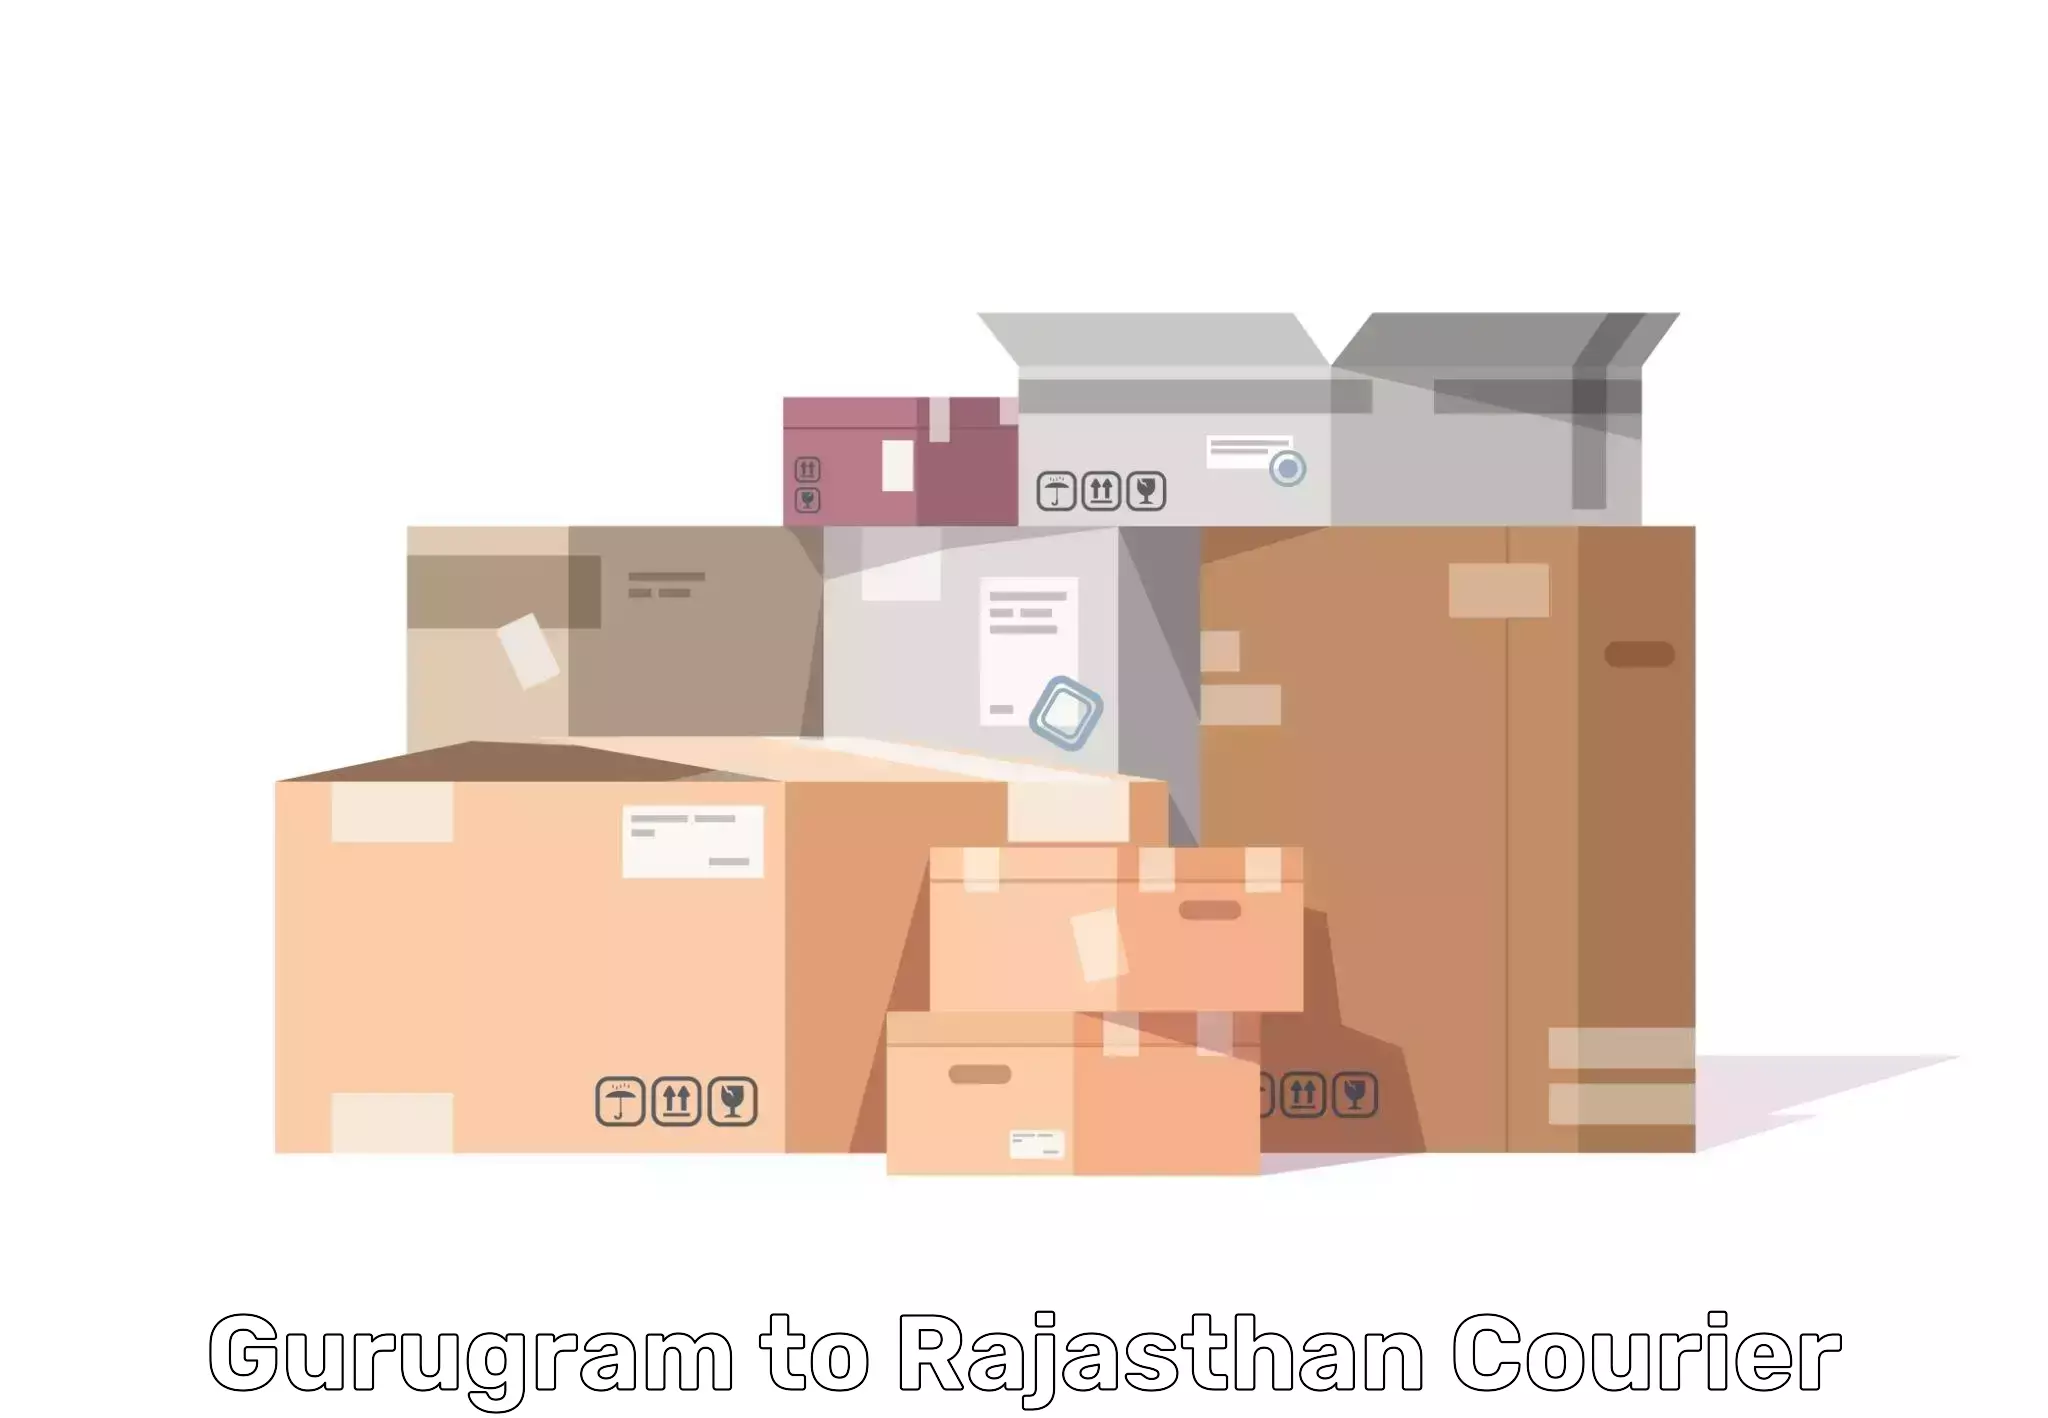 Furniture moving service Gurugram to Jaipur